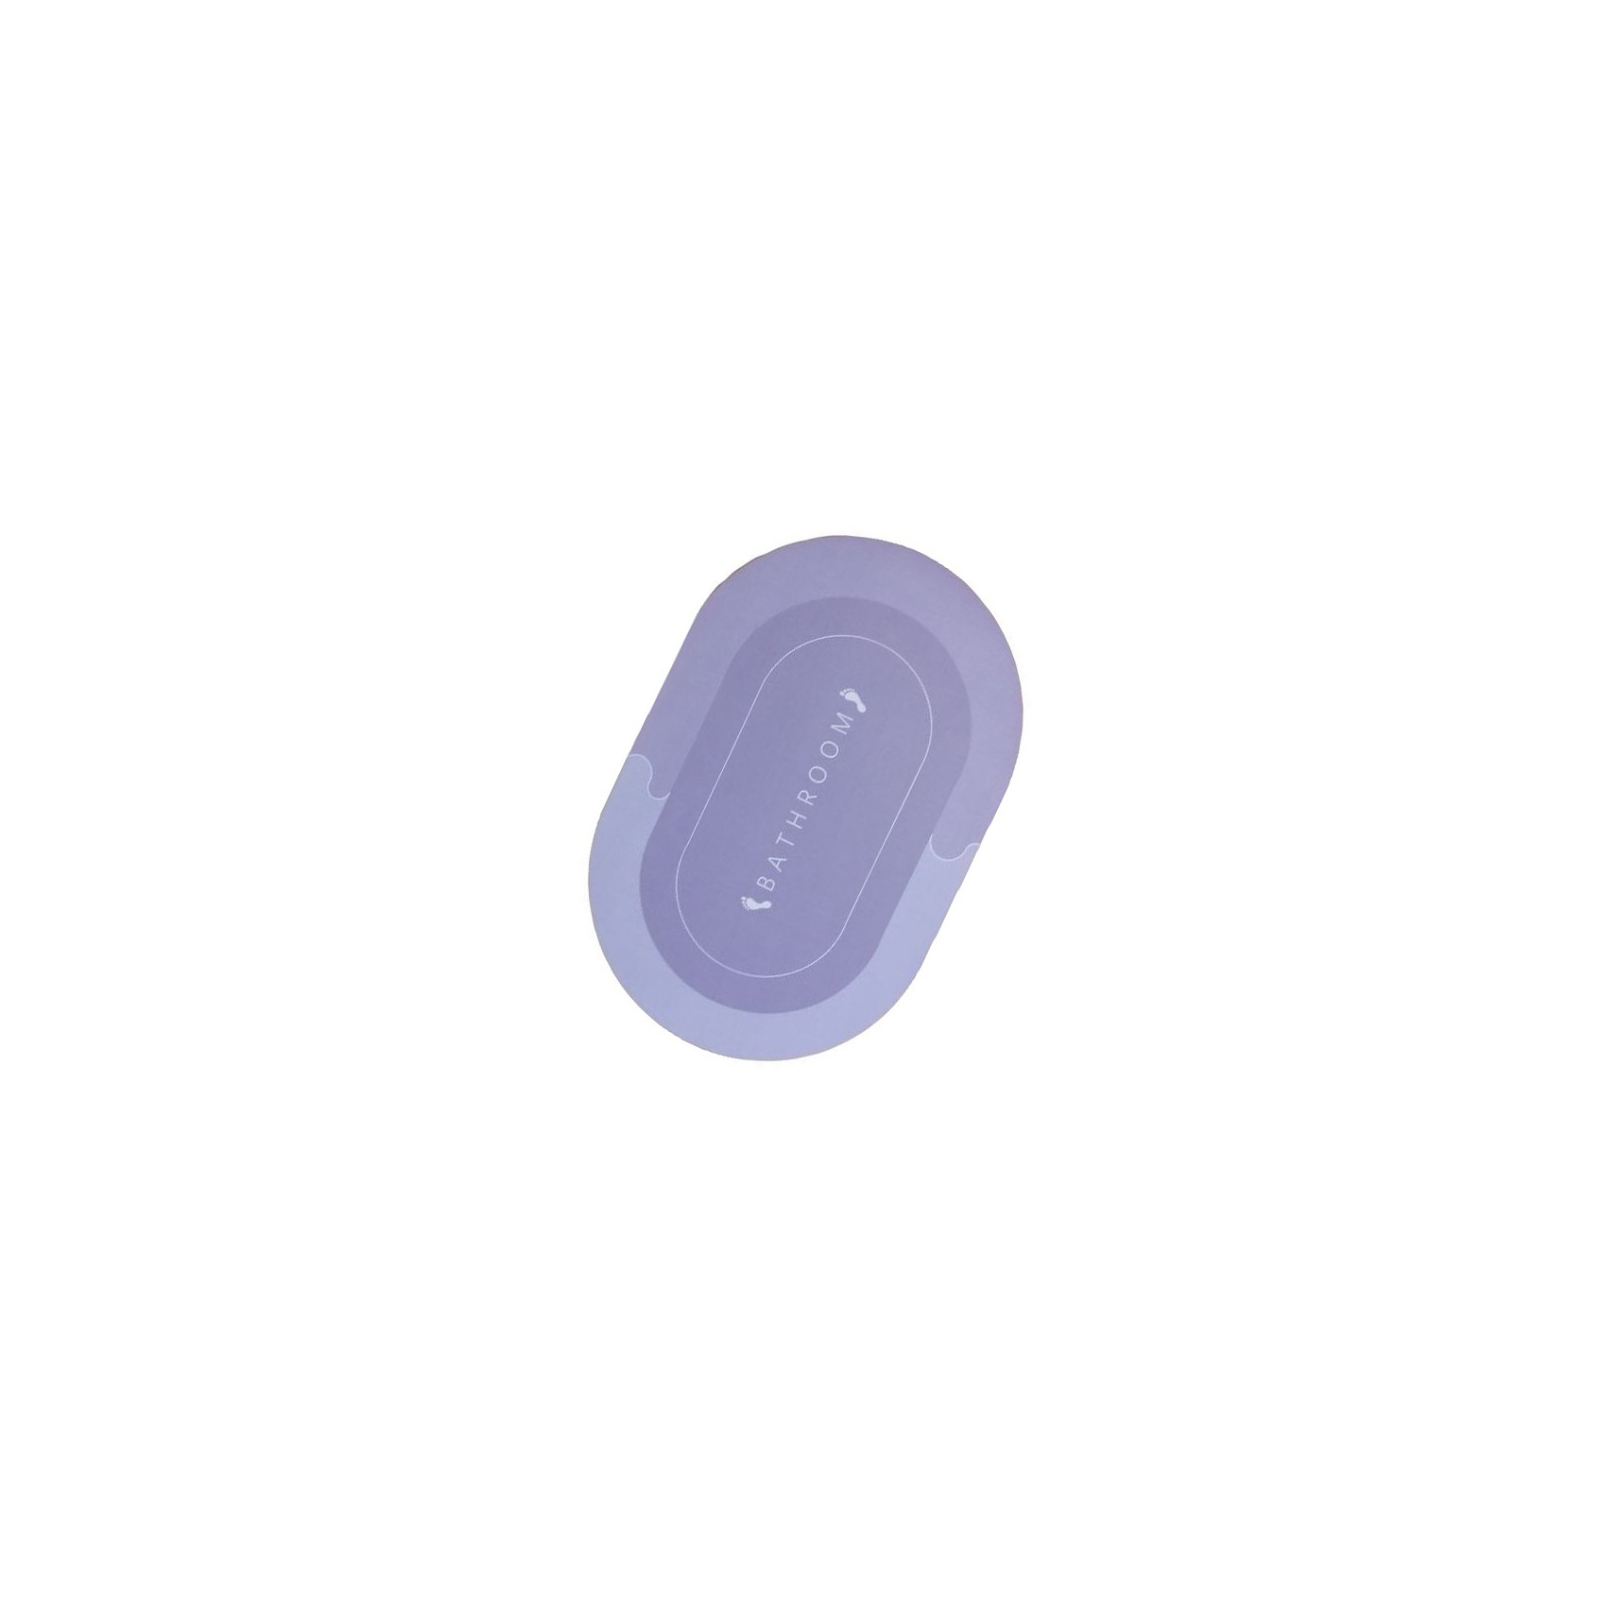 Коврик для ванной Stenson суперпоглощающий 40 х 60 см овальный светло-фиолетовый (R30939 l.violet)